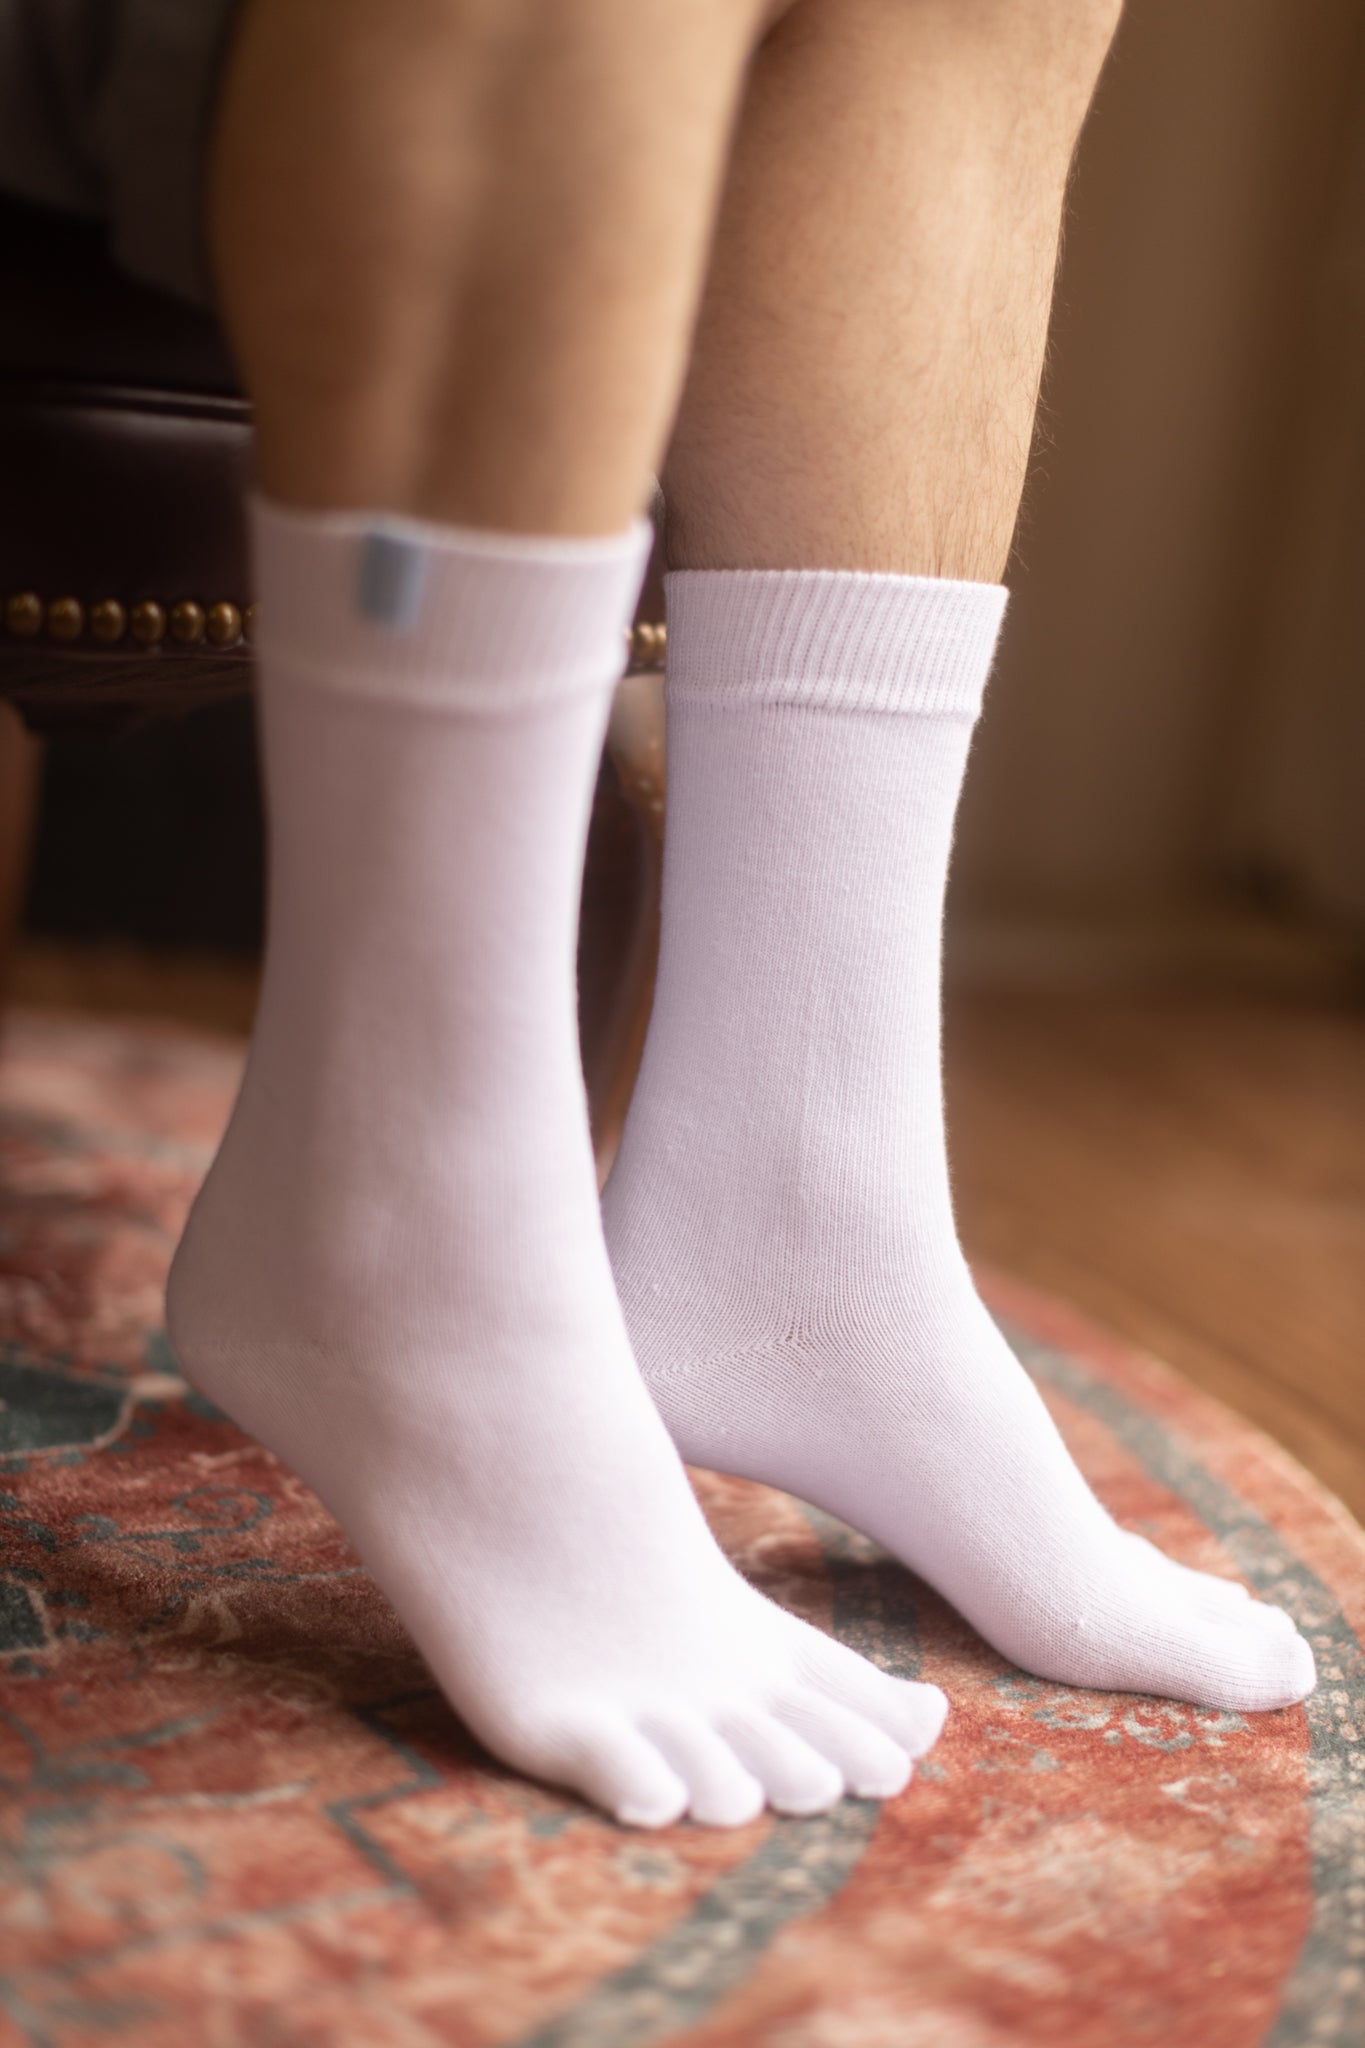  TOETOE - Women, Men Health Gel Toe Socks (1 Pair) : Clothing,  Shoes & Jewelry